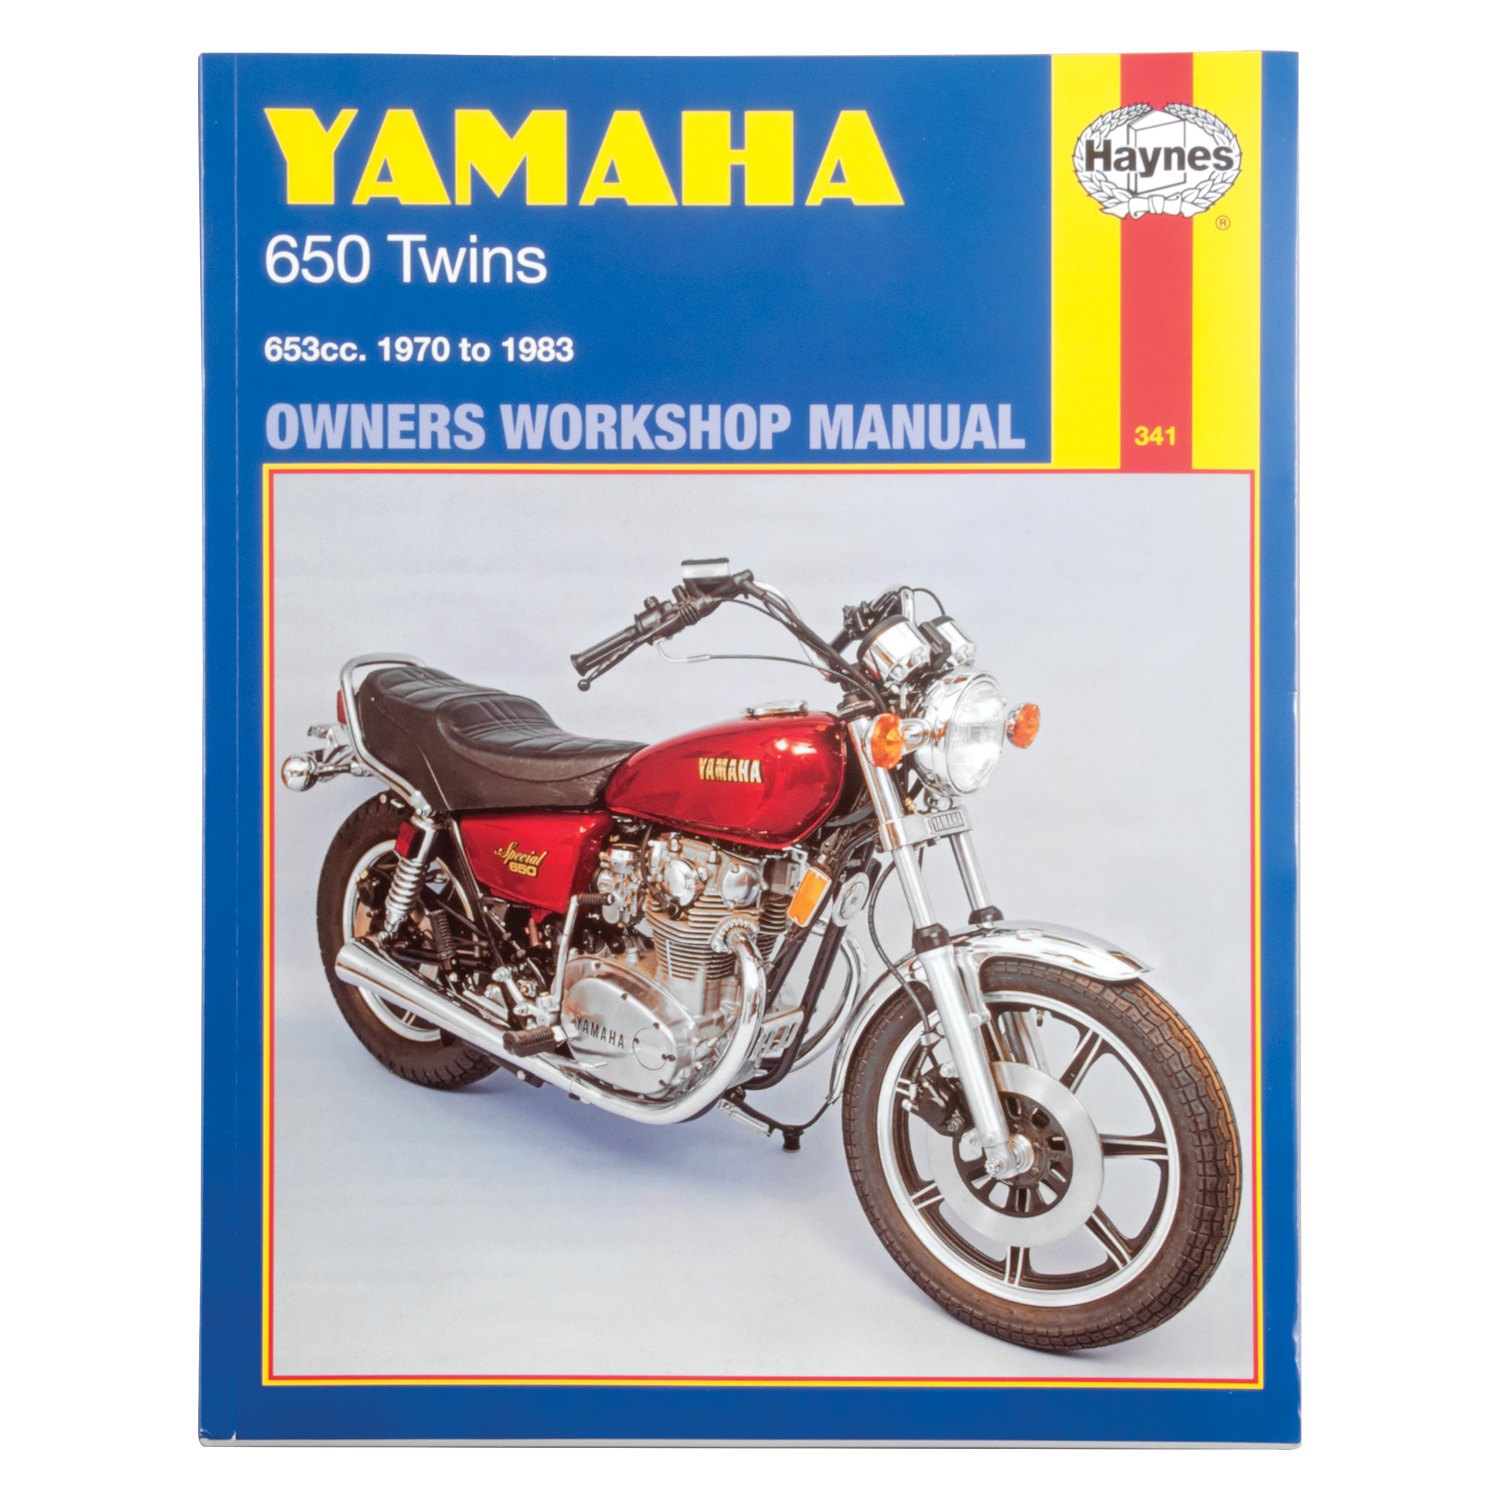 Haynes Manuals® - Motorcycle Owner's Workshop Manual - MOTORCYCLEiD.com